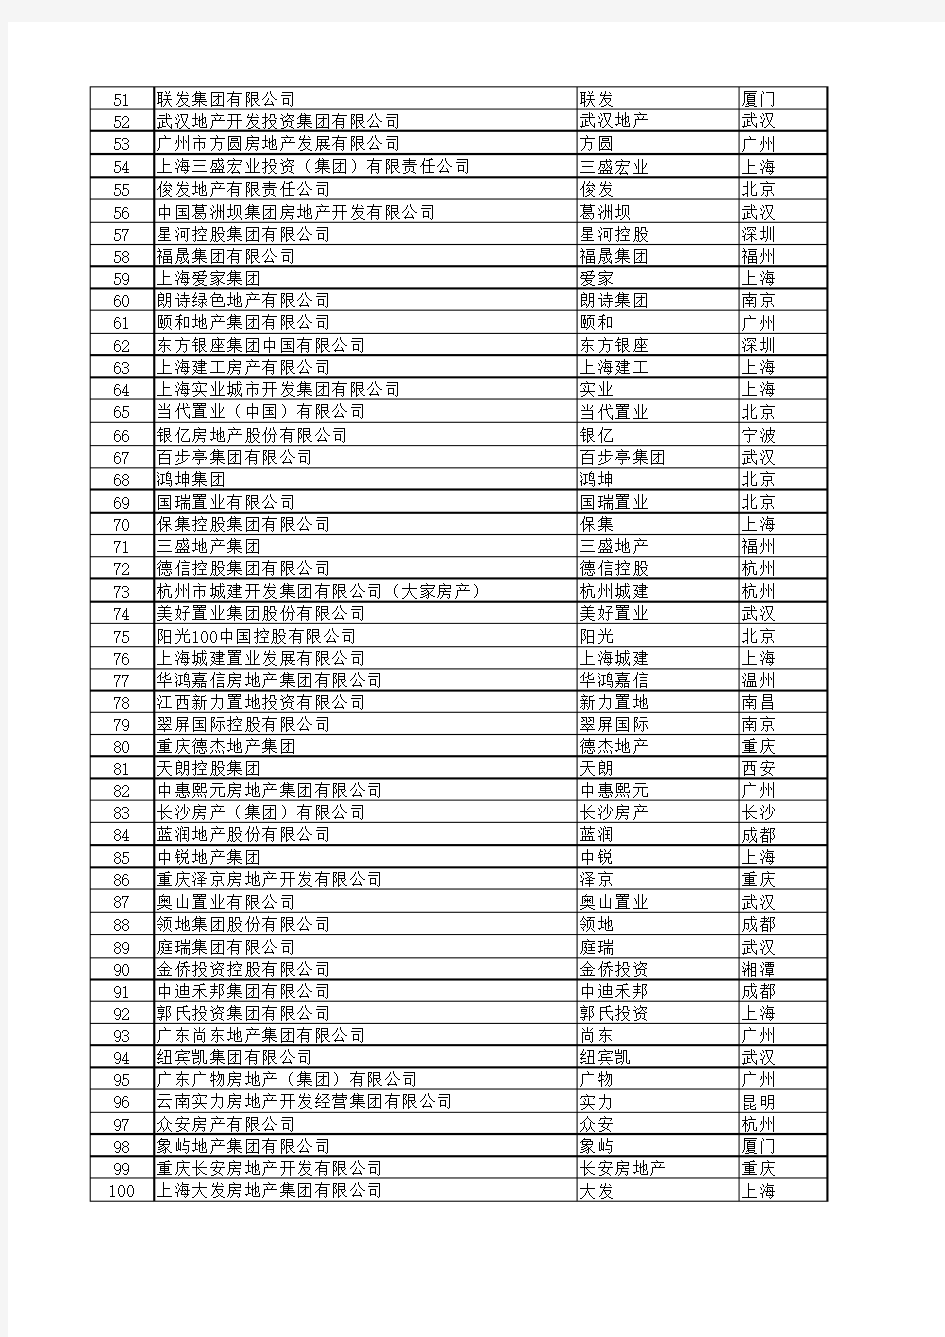 2016中国房地产百强企业榜单(含城市、总部地址)